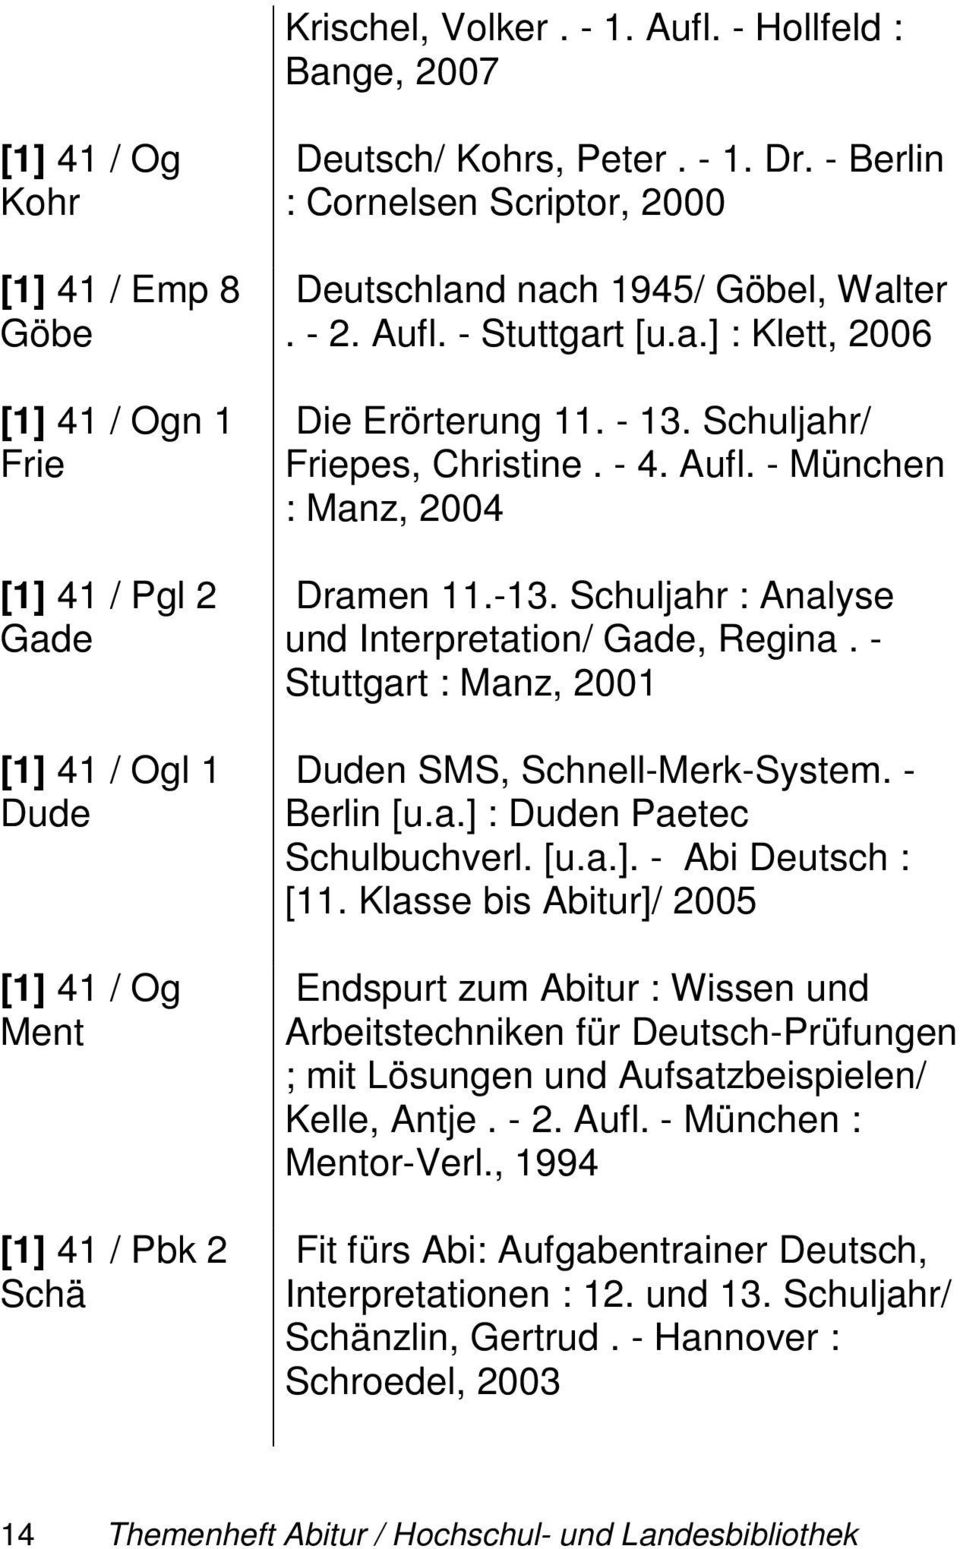 - Berlin : Cornelsen Scriptor, 2000 Deutschland nach 1945/ Göbel, Walter. - 2. Aufl. - Stuttgart [u.a.] : Klett, 2006 Die Erörterung 11. - 13. Schuljahr/ Friepes, Christine. - 4. Aufl. - München : Manz, 2004 Dramen 11.